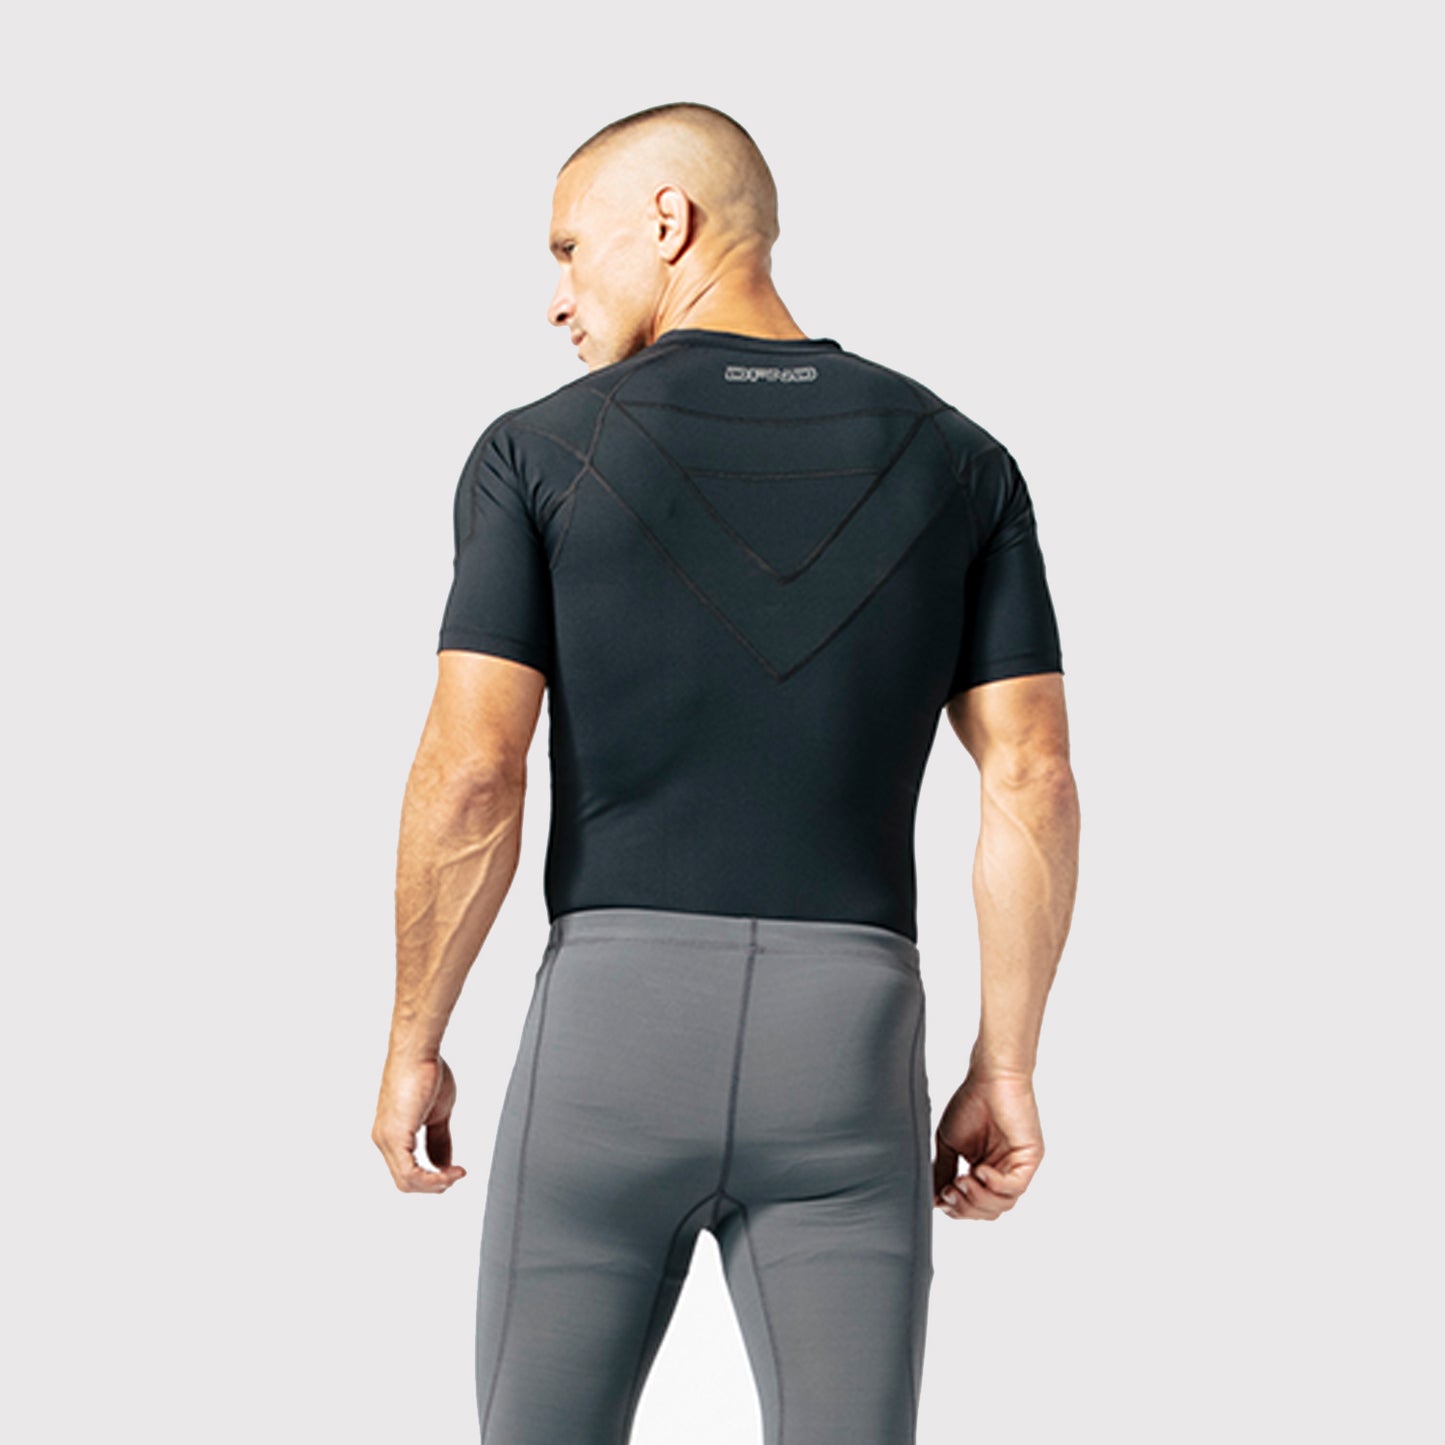 Tommie Copper Short Sleeve Mens Compression Shirt, Full Back Support Shirt,  Shoulder & Posture